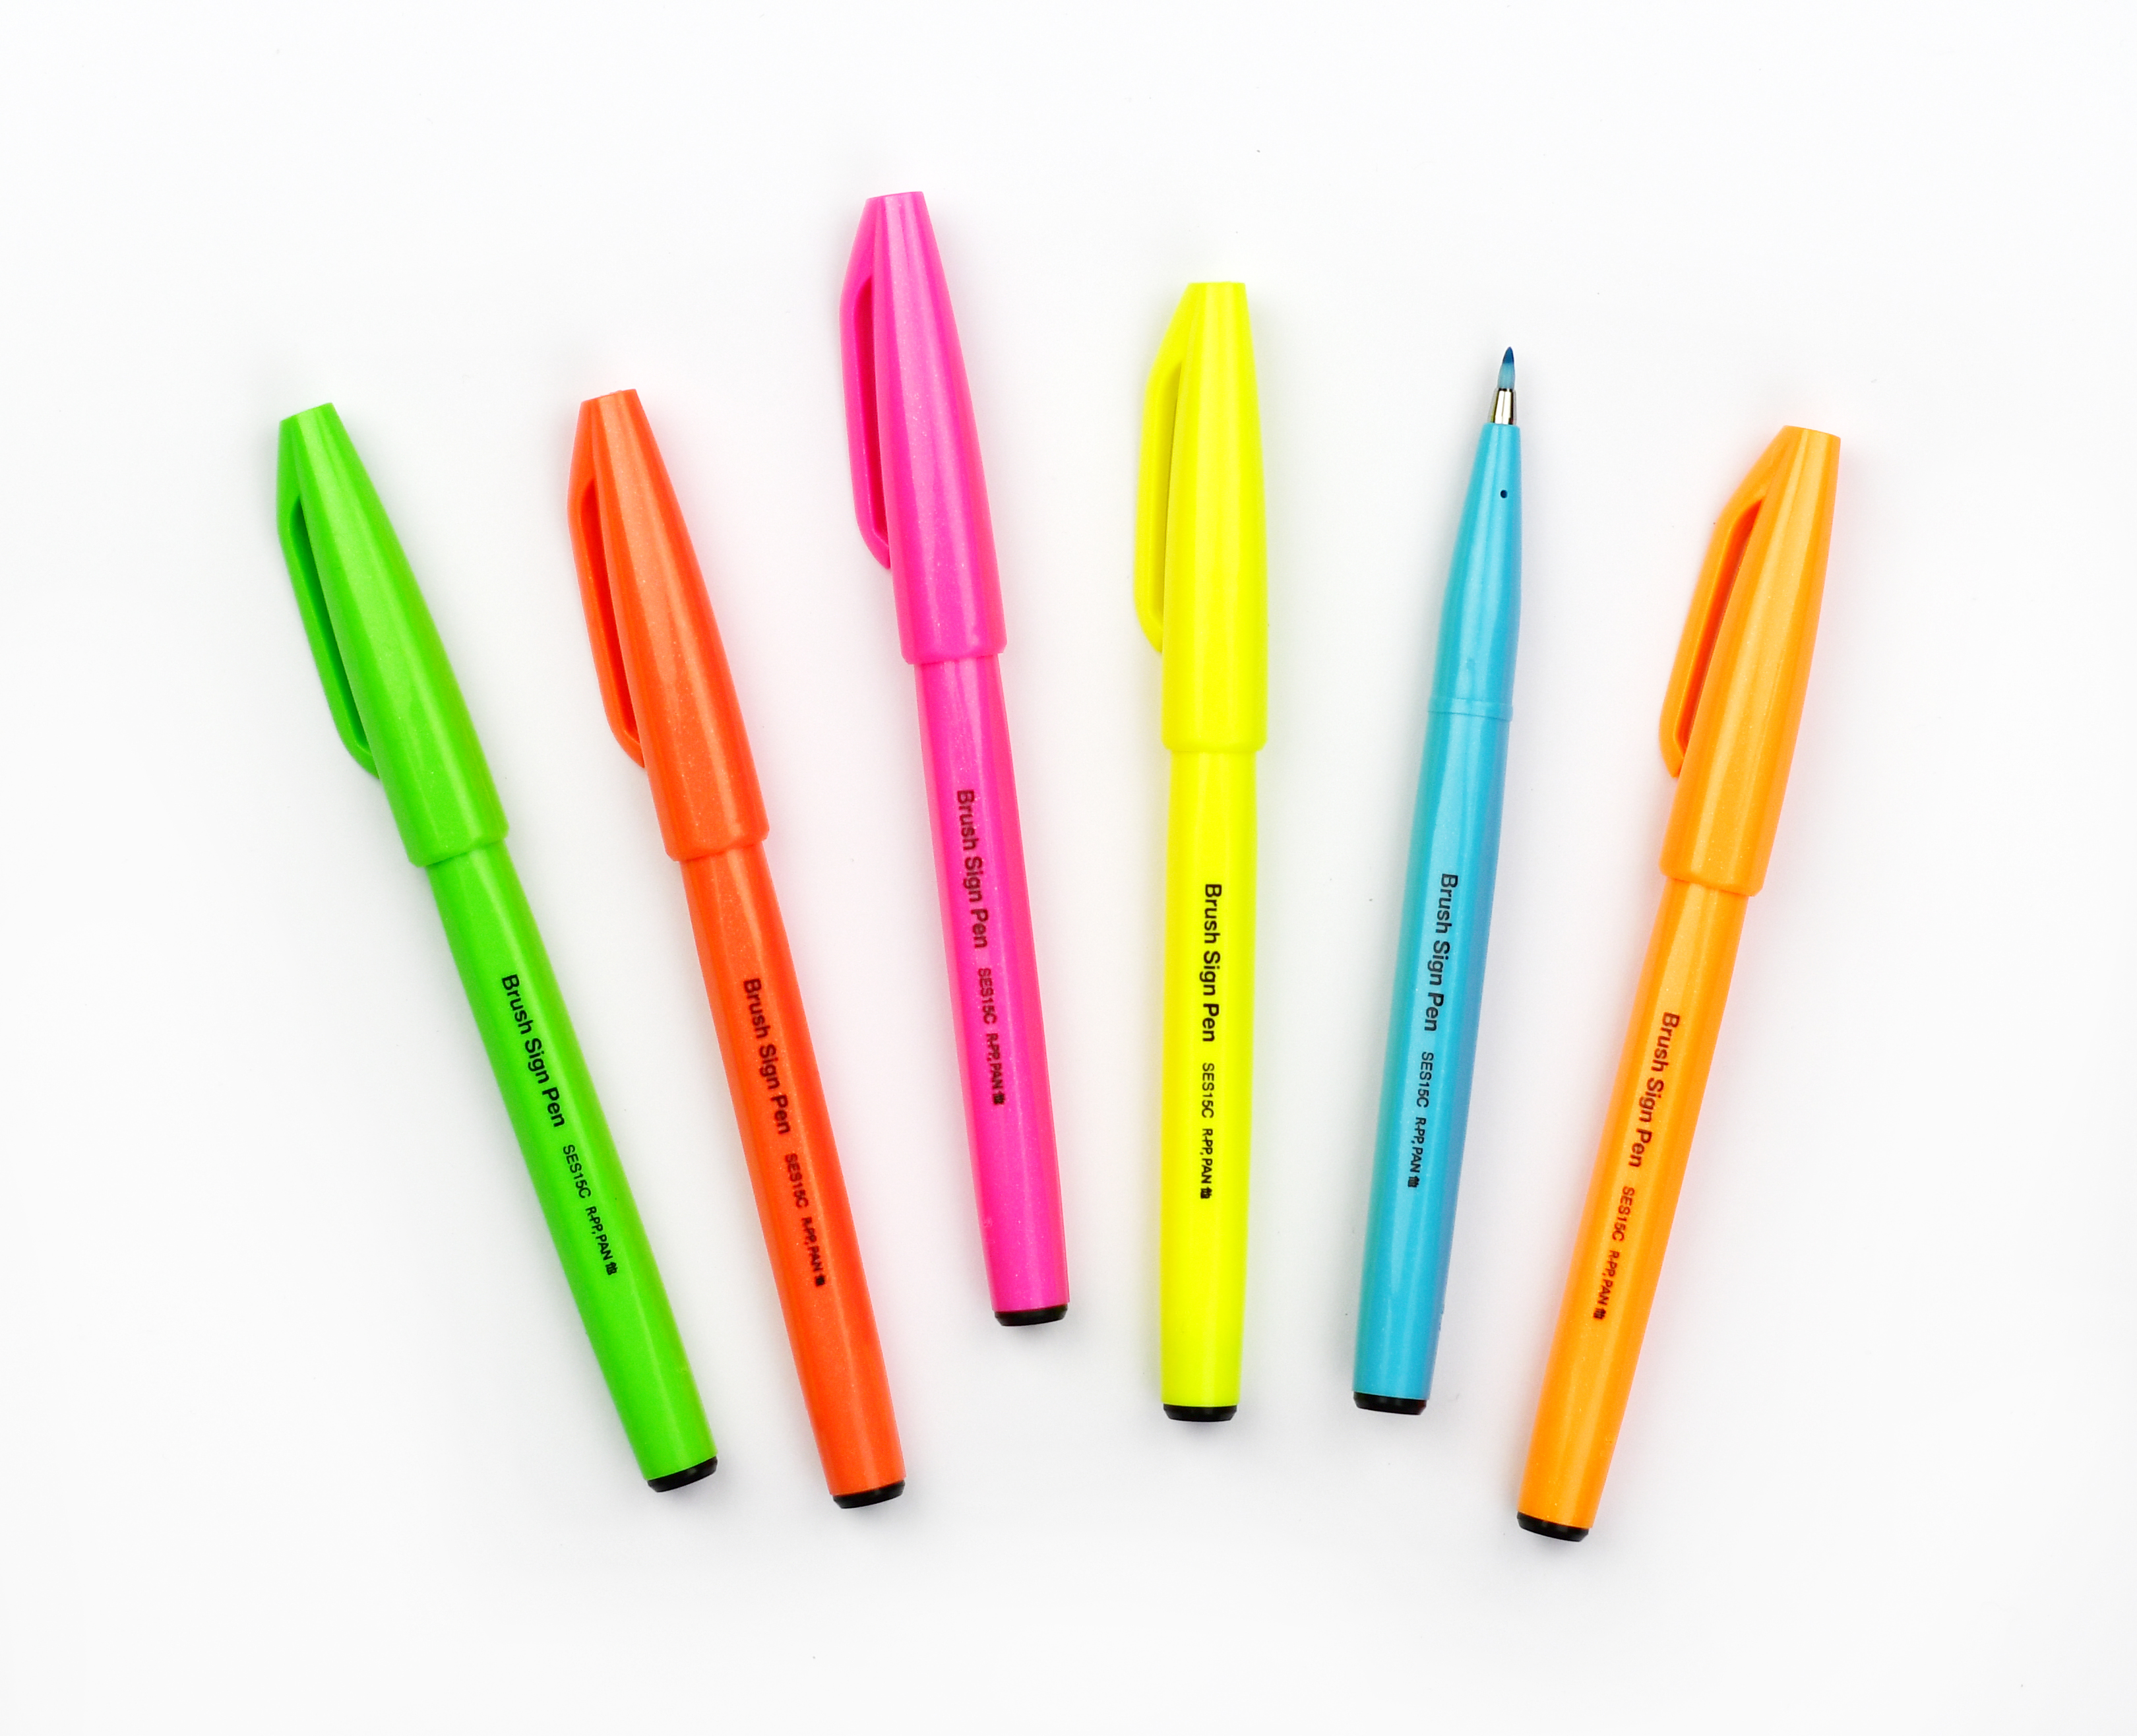 Pinselstift Brush Sign Pen - Neon